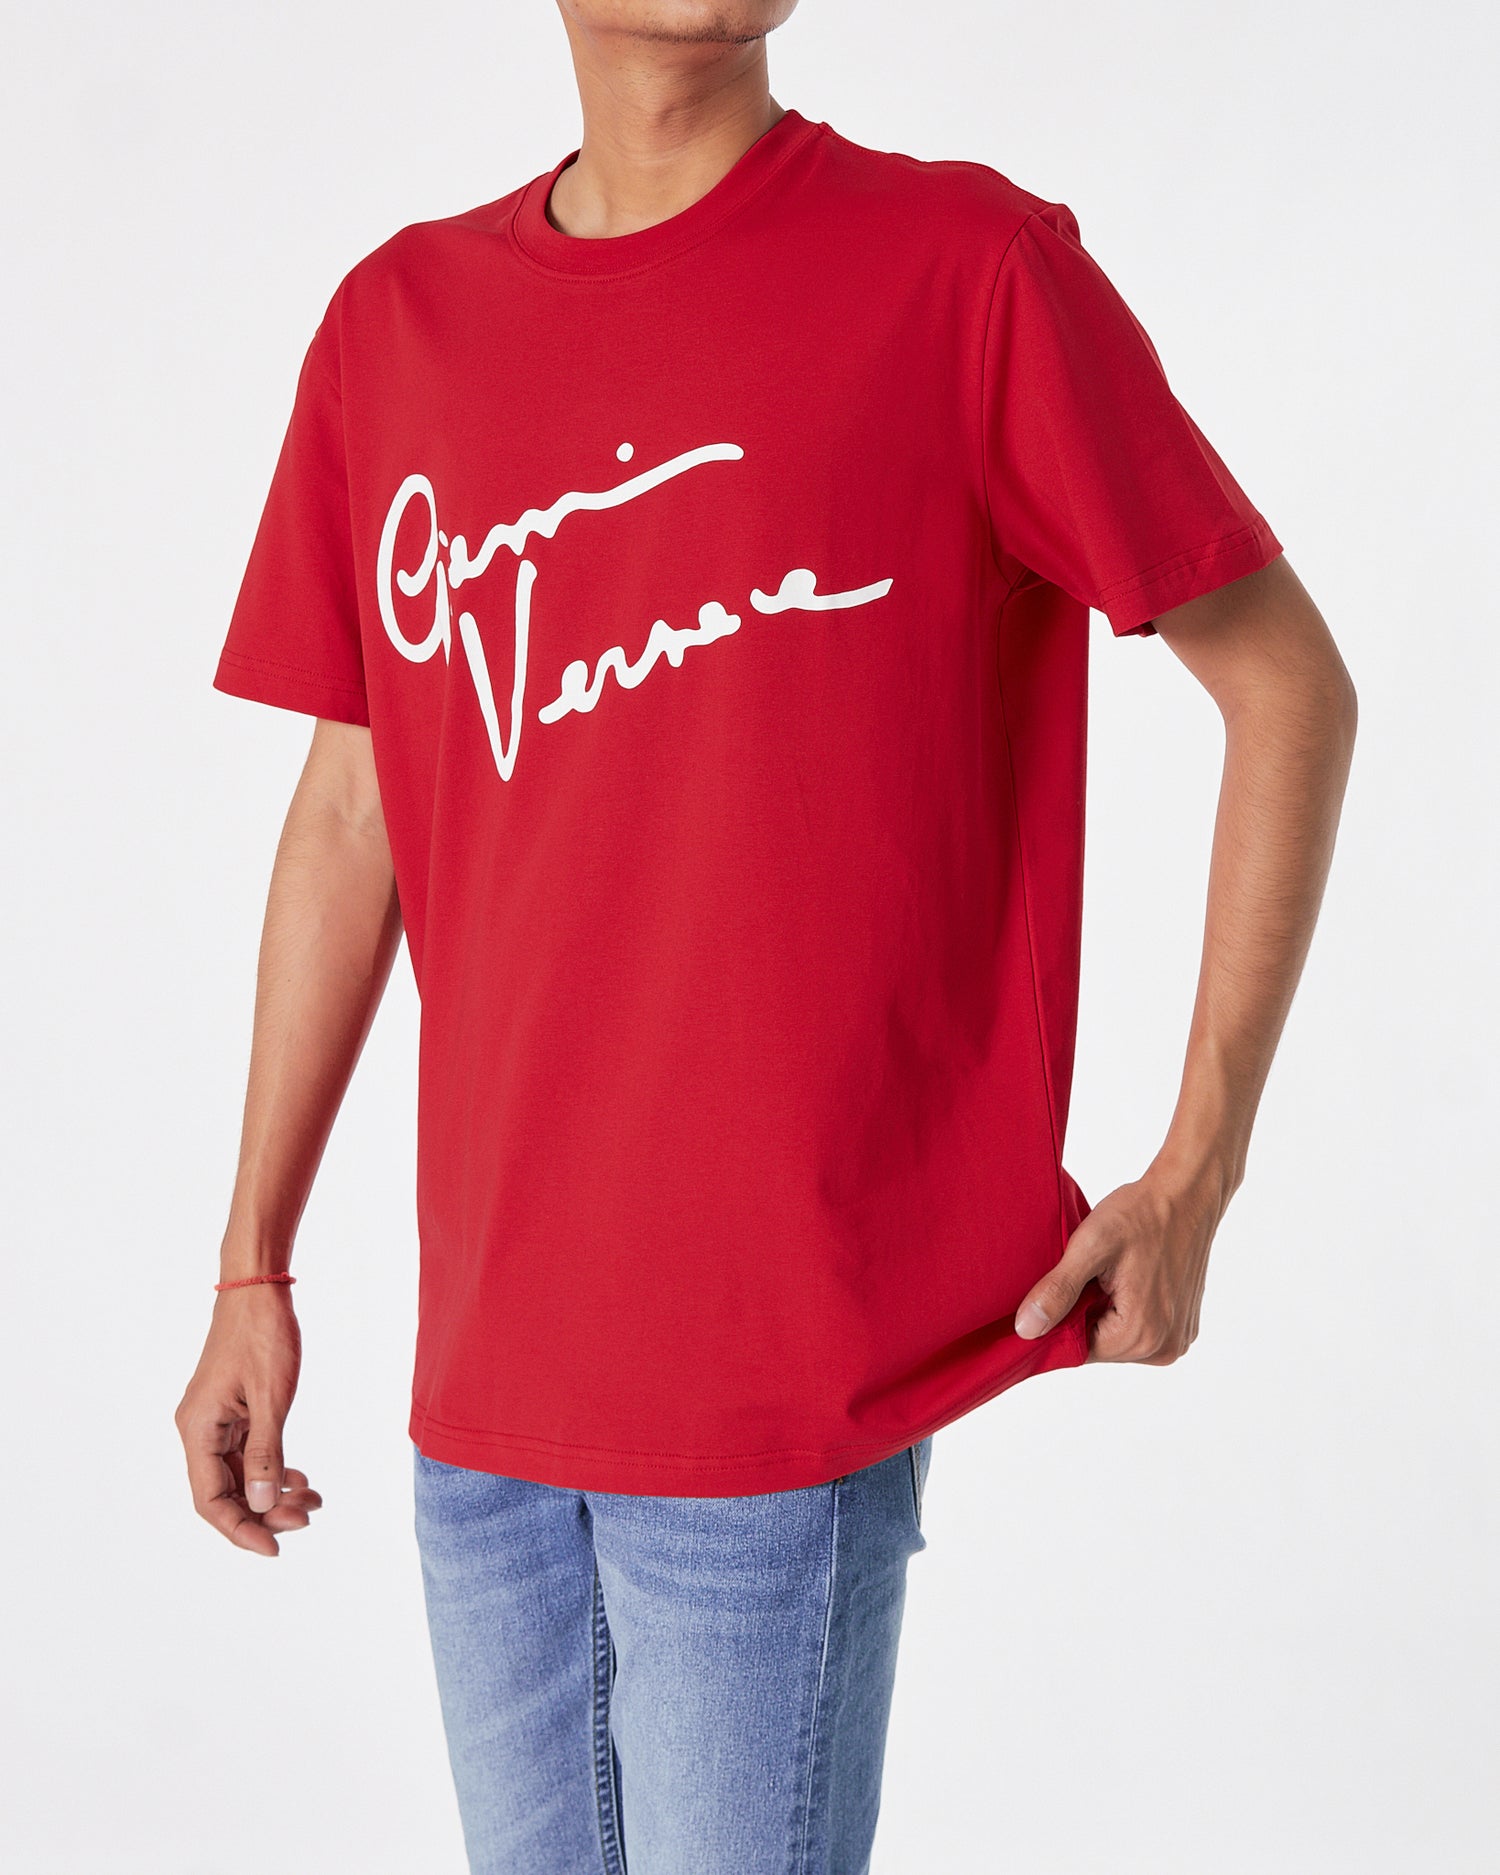 VER Signature Logo Printed Men Red T-Shirt 16.90